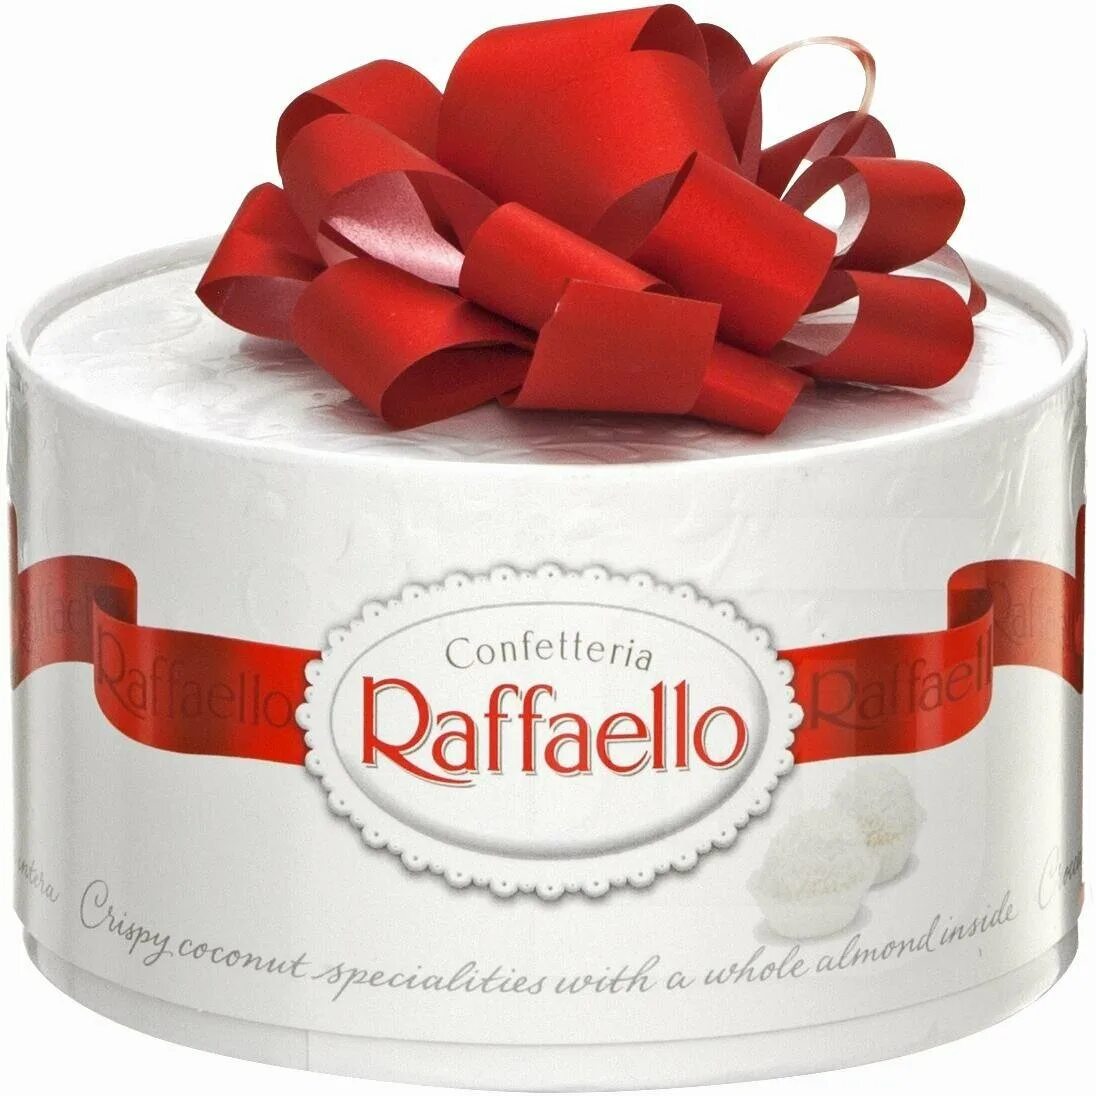 Конфеты рафаэлло купить в спб. Набор конфет Рафаэлло 100 г. Рафаэлло конфеты 200г. Конфеты с миндальным орехом, Raffaello. Торт коробка Рафаэлло.